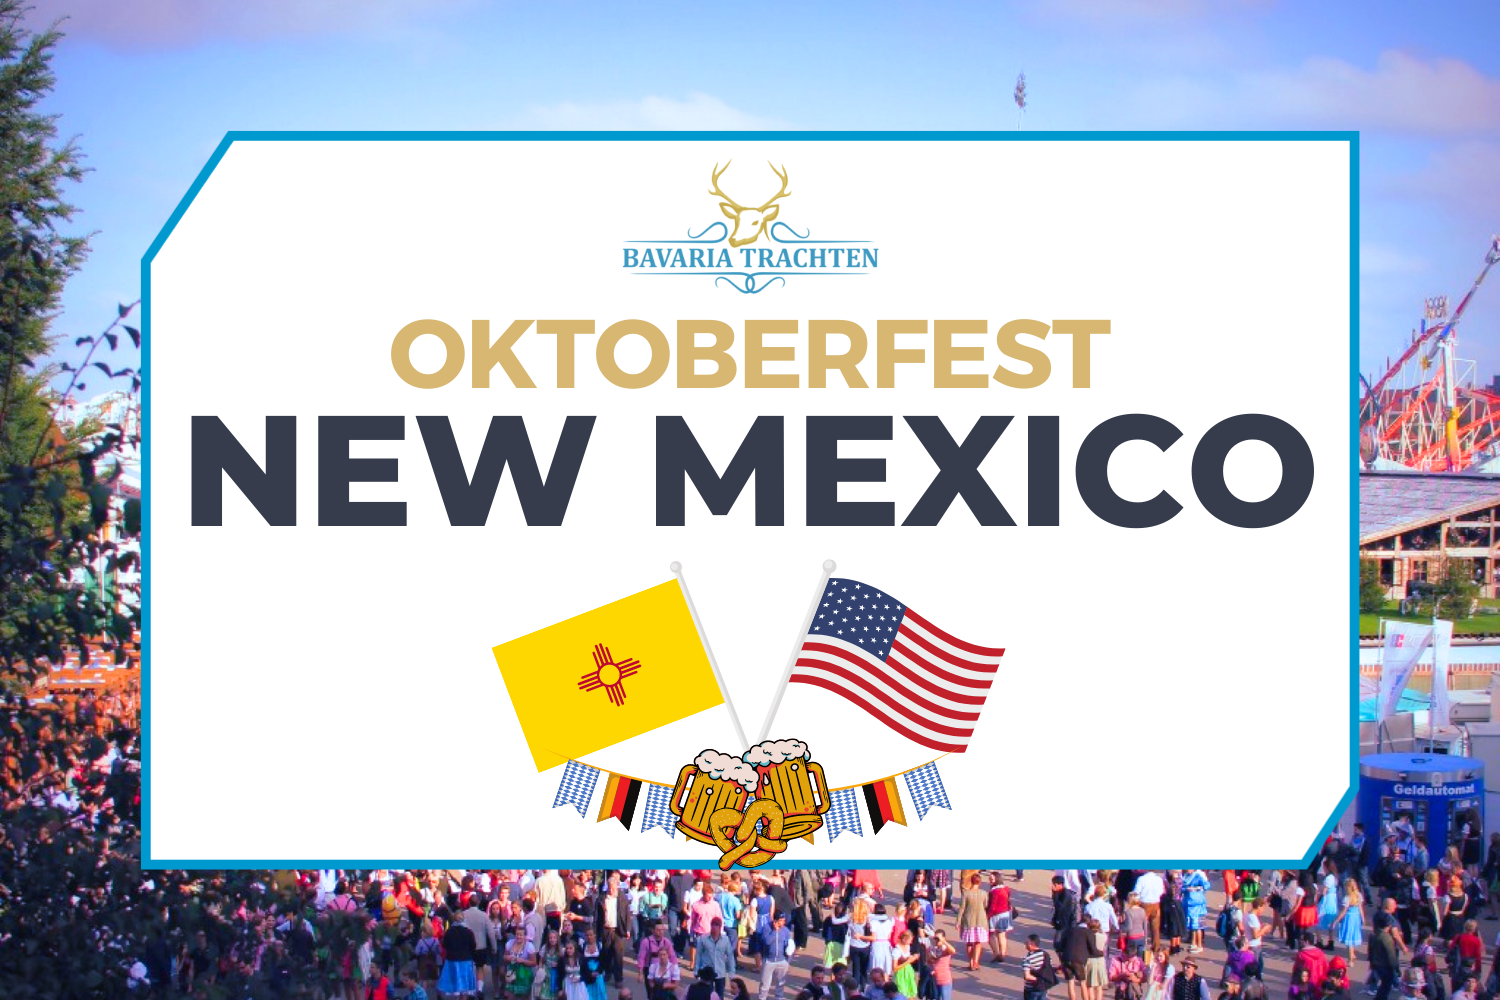 Oktoberfest New Mexico, USA